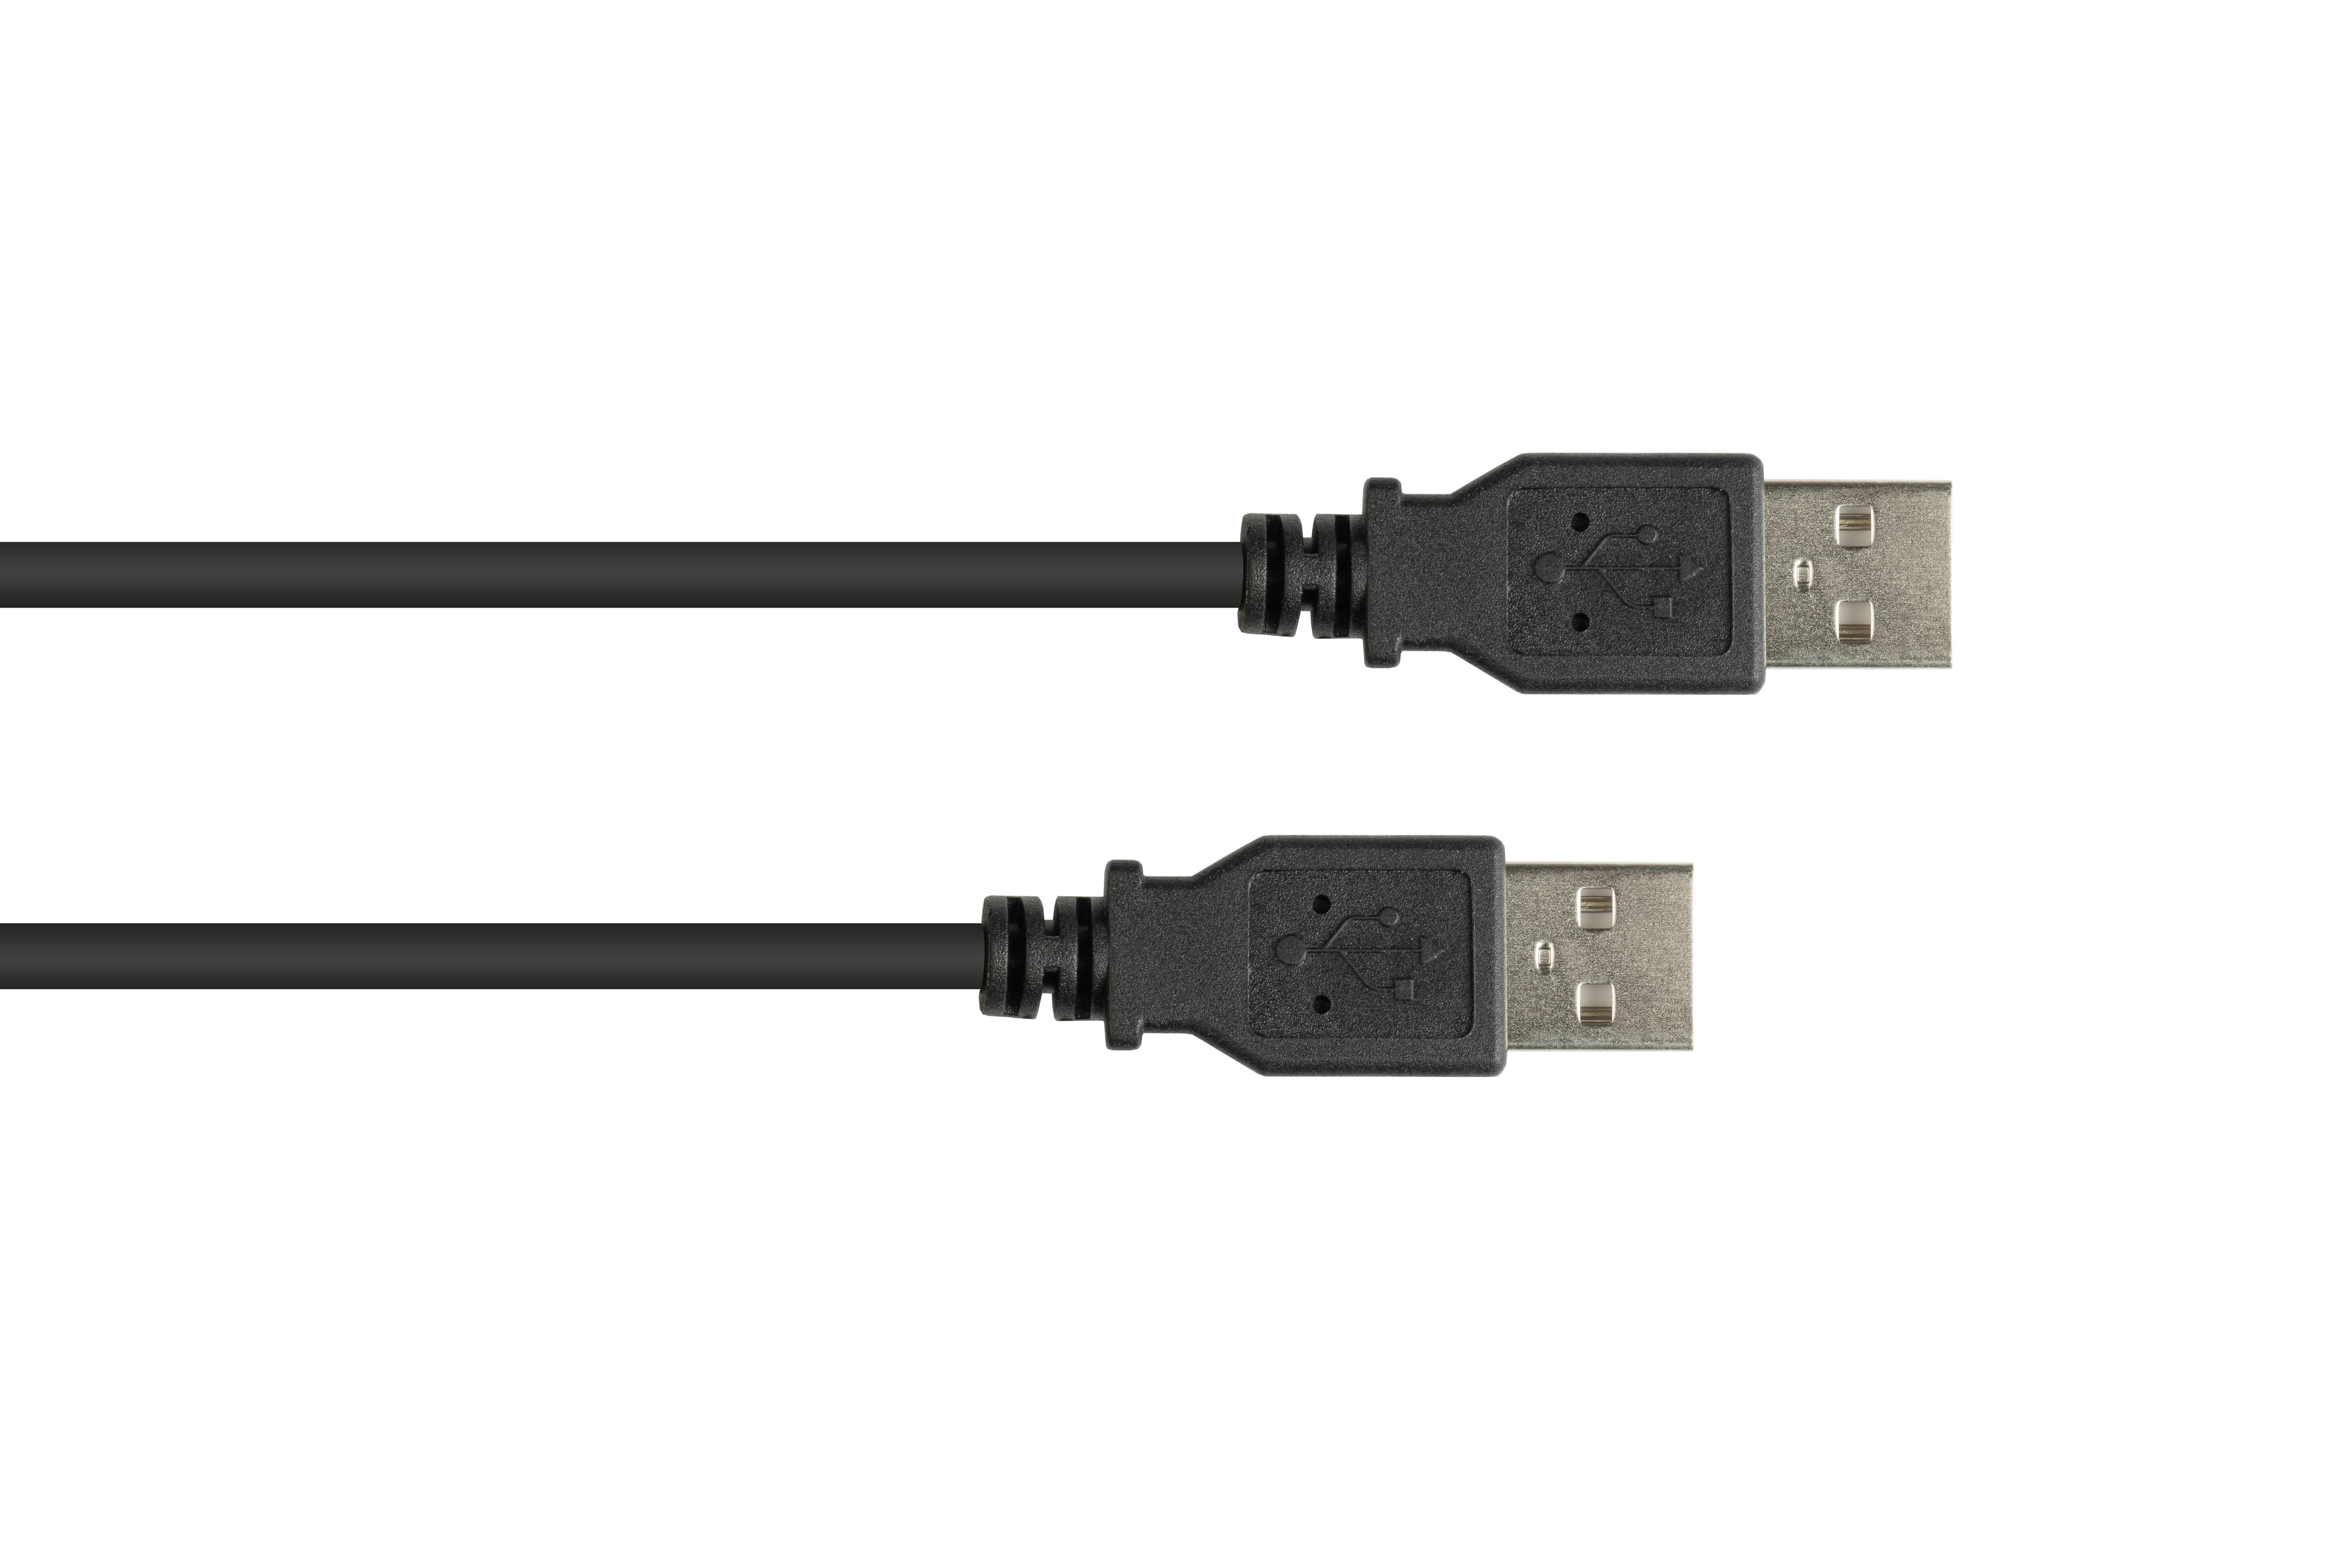 Stecker USB A KABELMEISTER Stecker Anschlusskabel schwarz A, 2.0 an